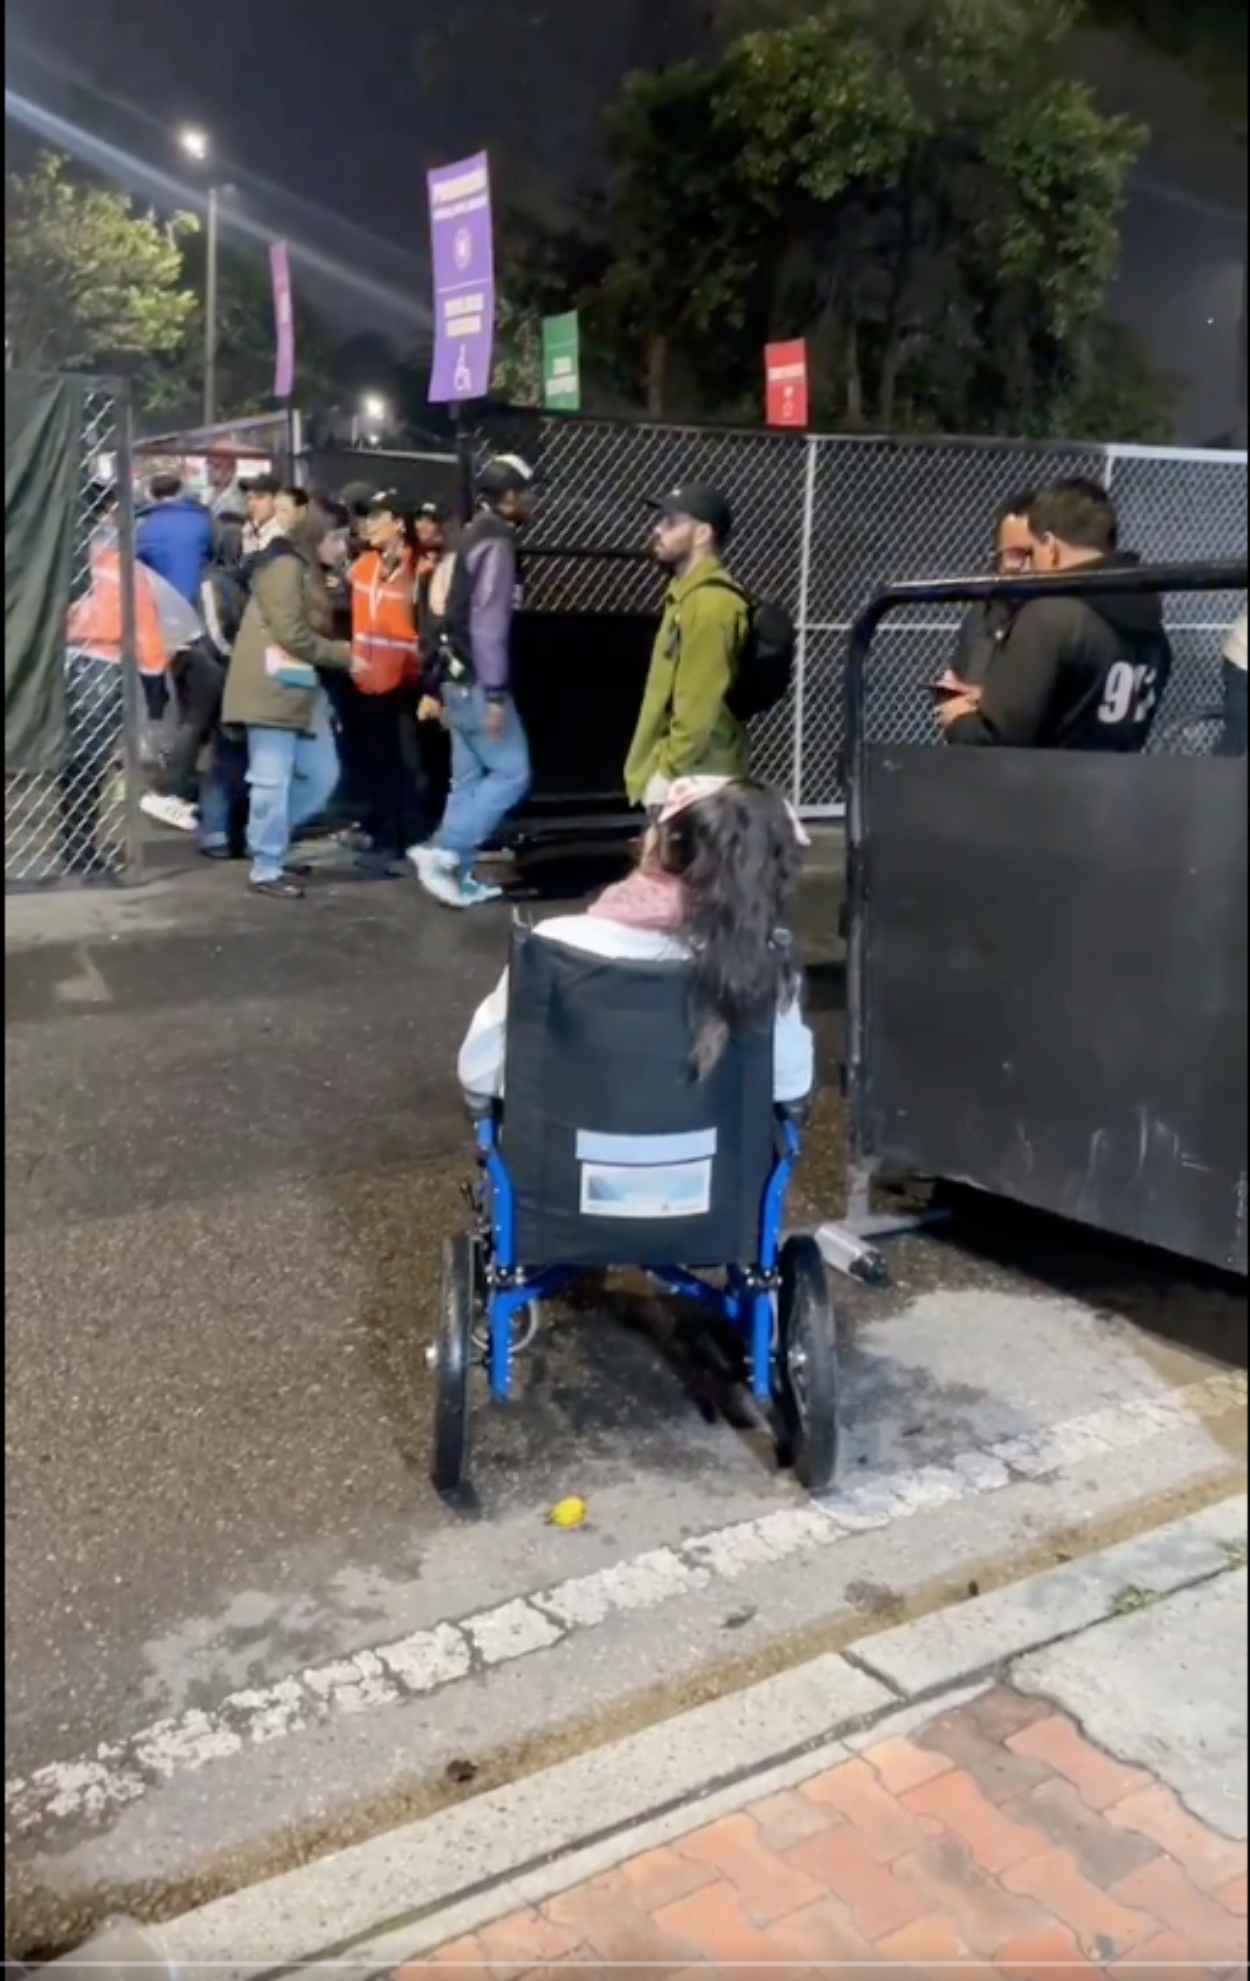 Denuncian que a mujer en silla de ruedas la discriminaron y no la dejaron entrar al FEP